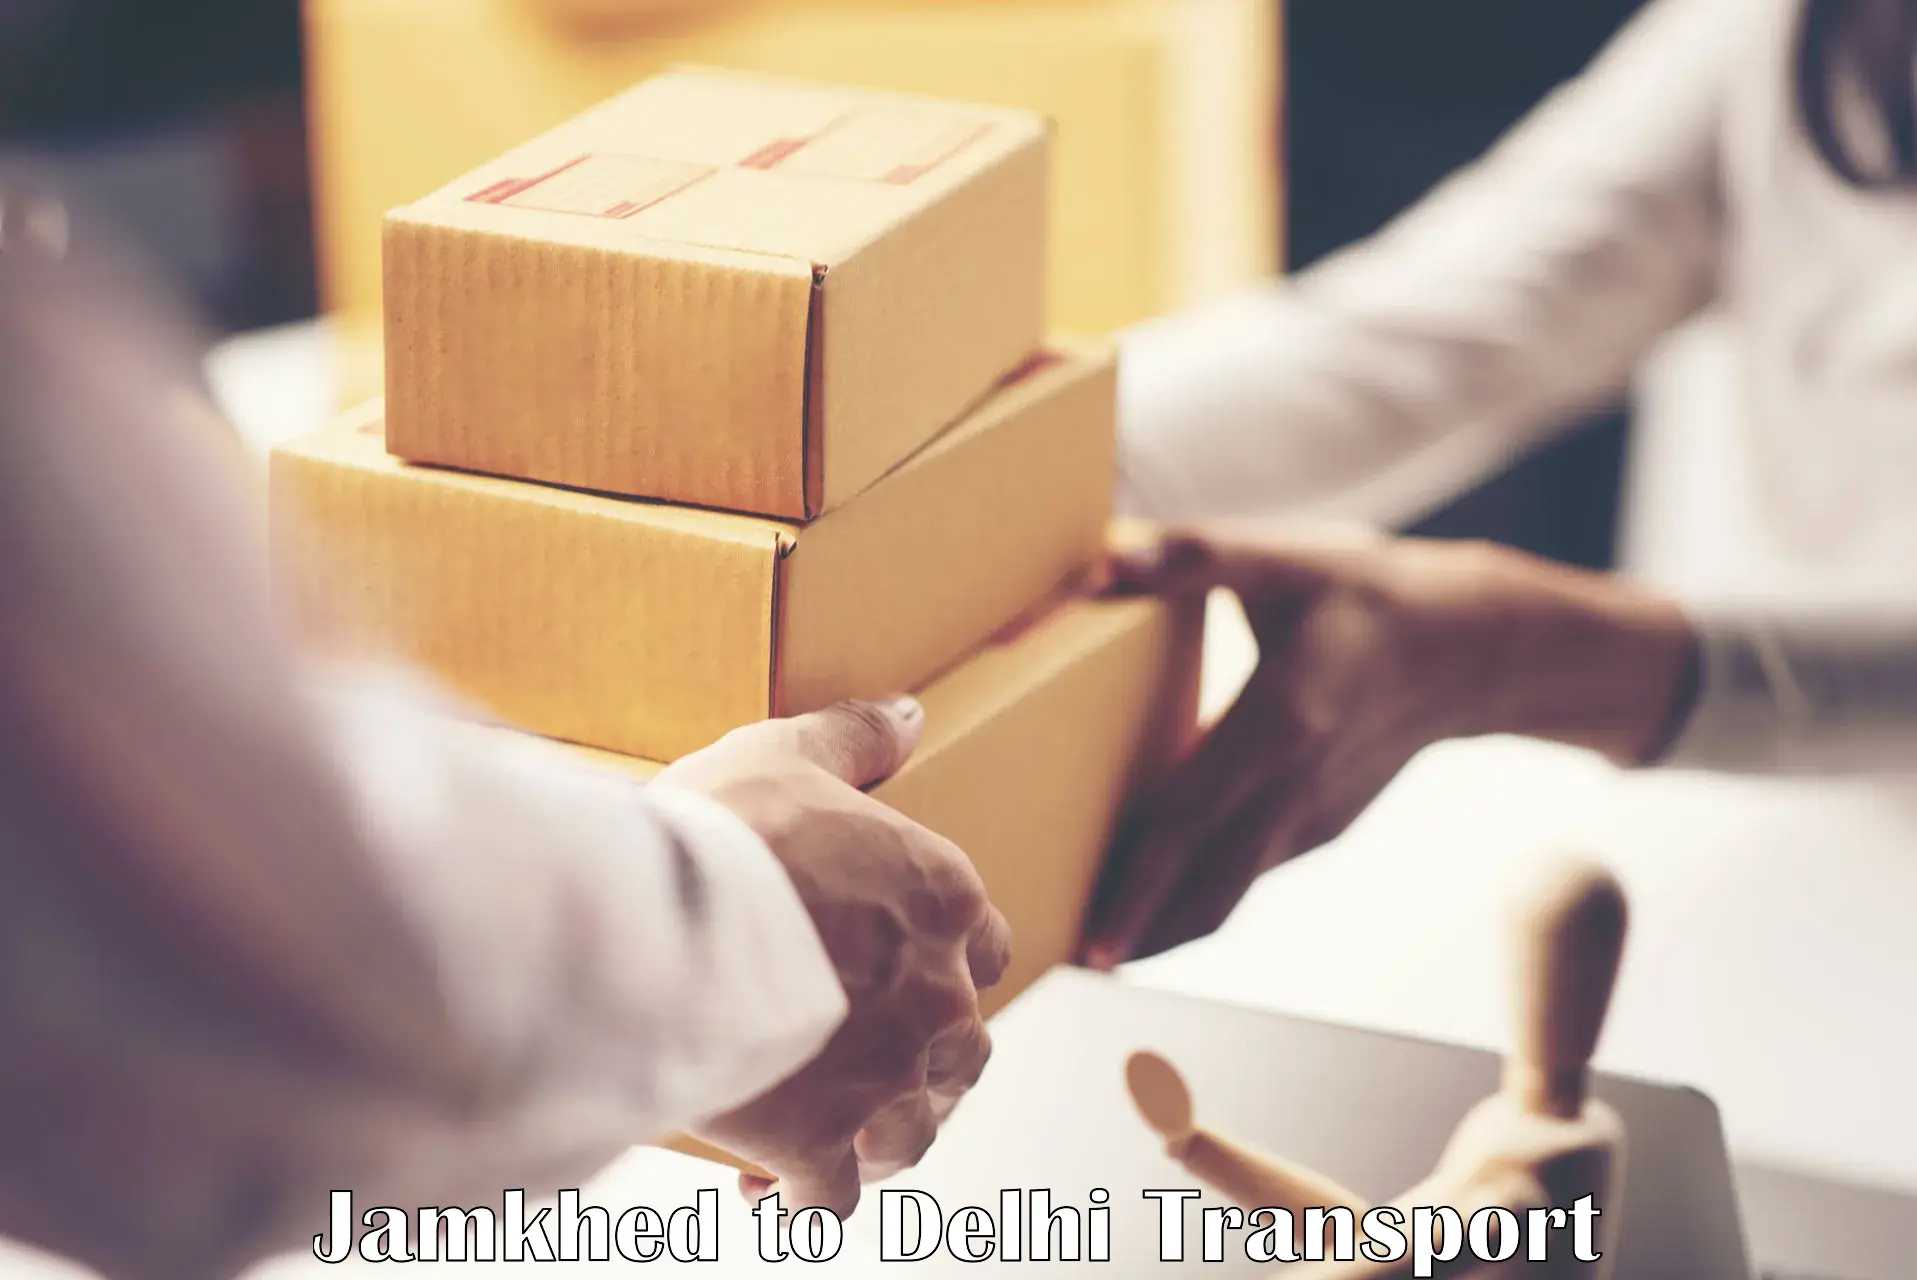 Commercial transport service Jamkhed to Delhi